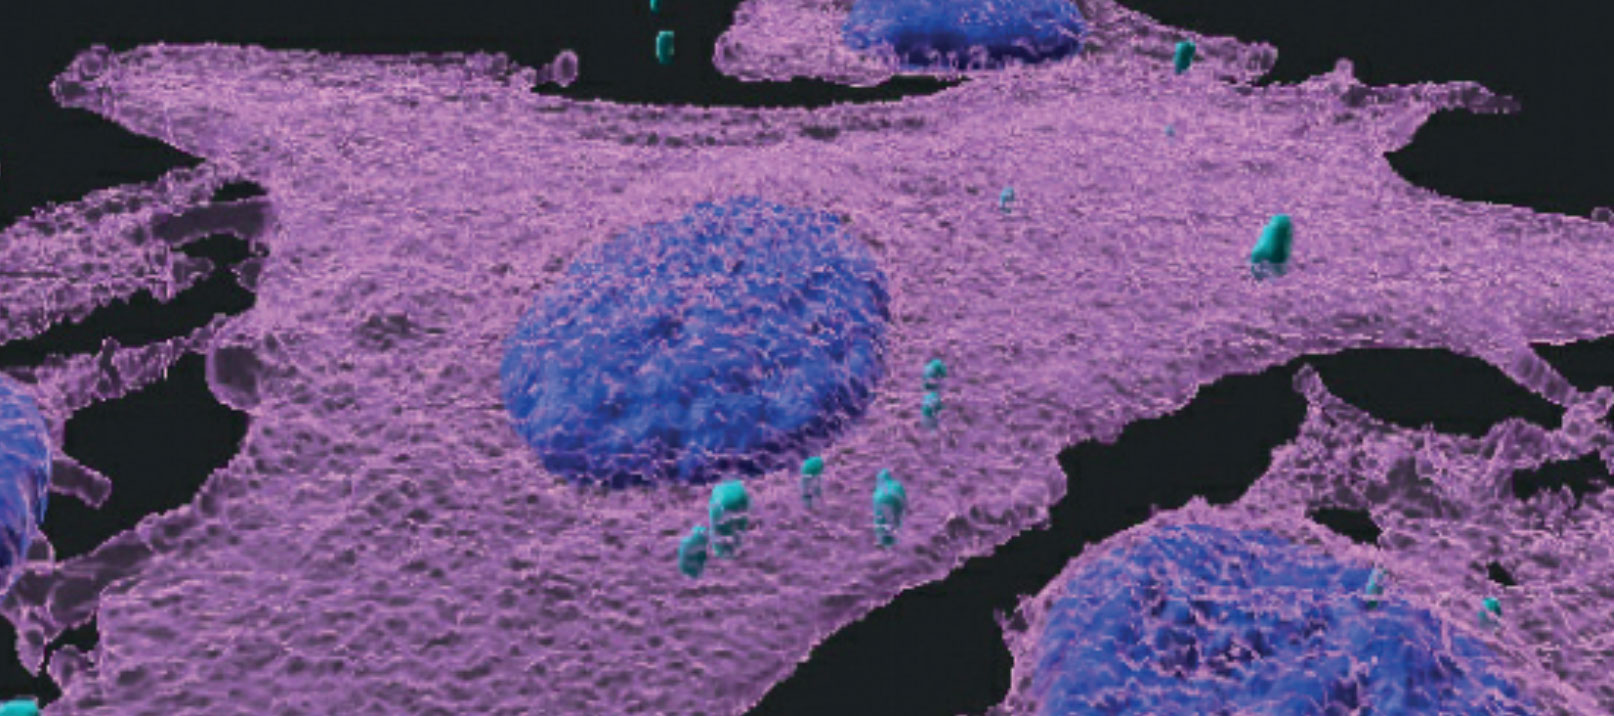 Image par immunofluorescence 3D de cellules de mélanome (magenta) infectées par des bactéries (turquoise). Les noyaux des cellules sont en bleu